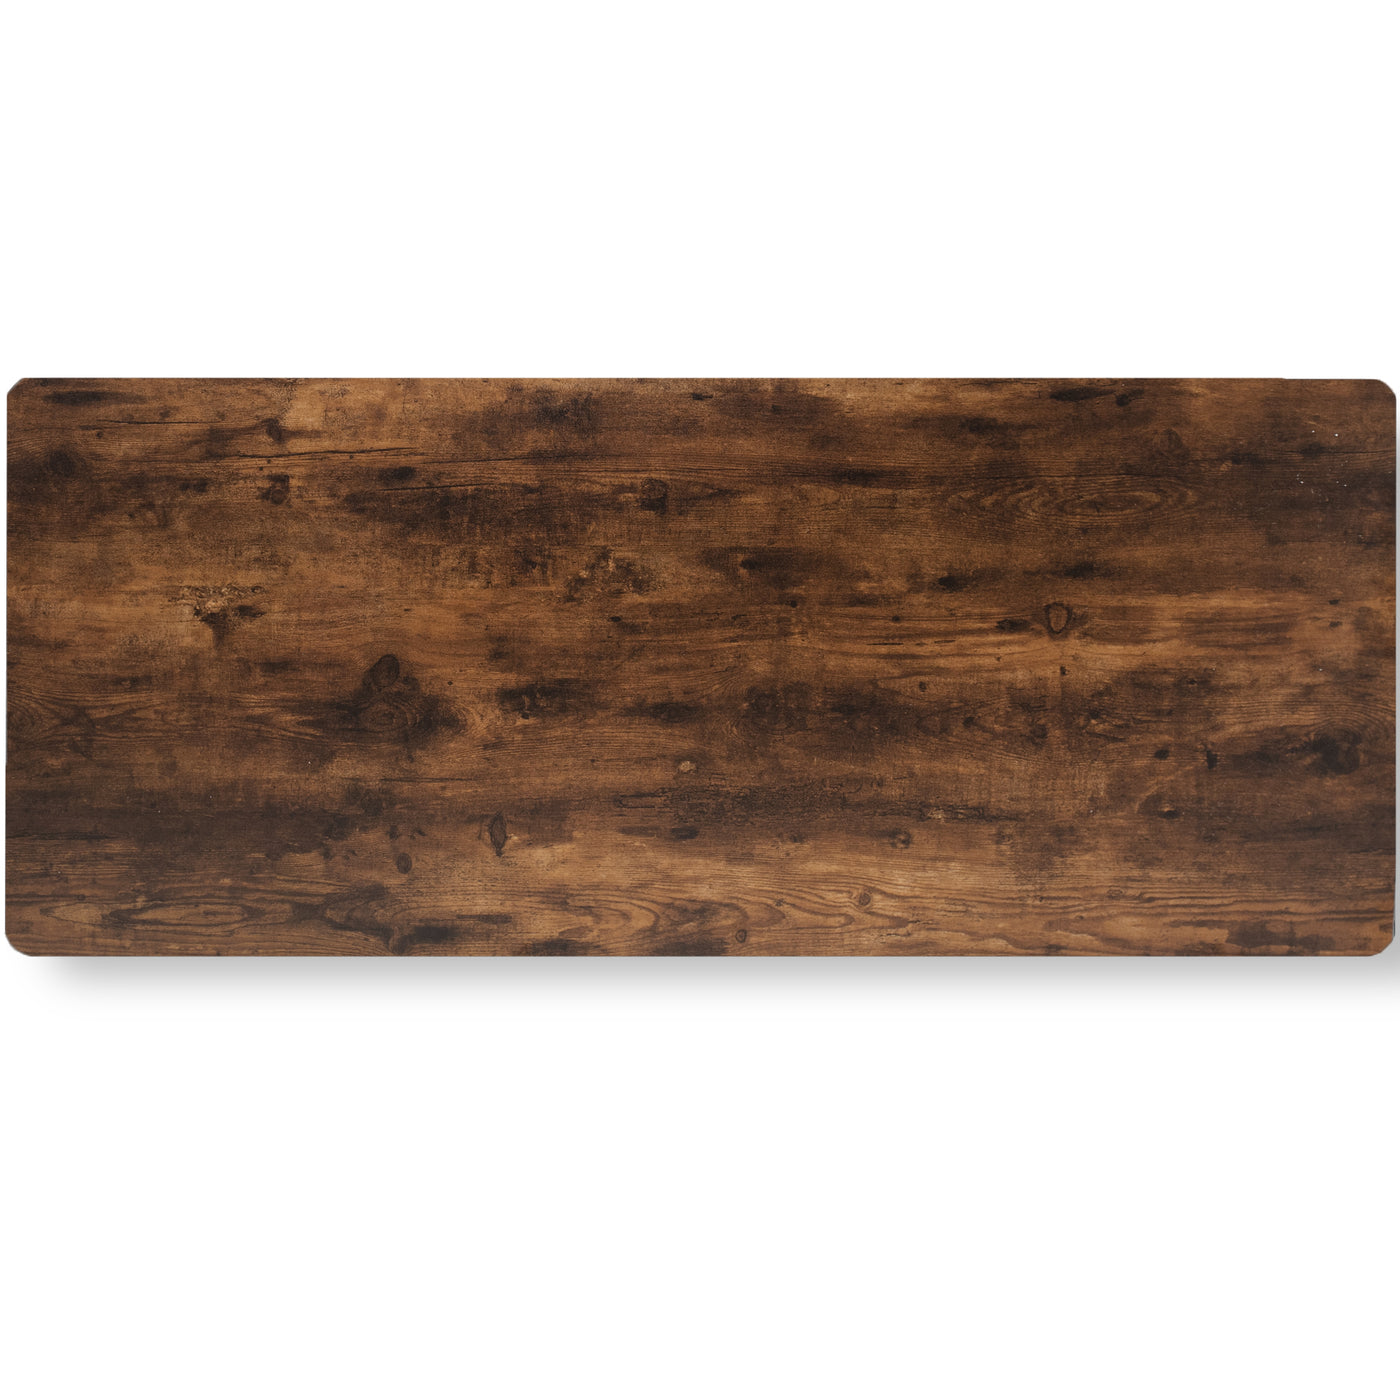 Rustic 60” Vintage Brown Table Top